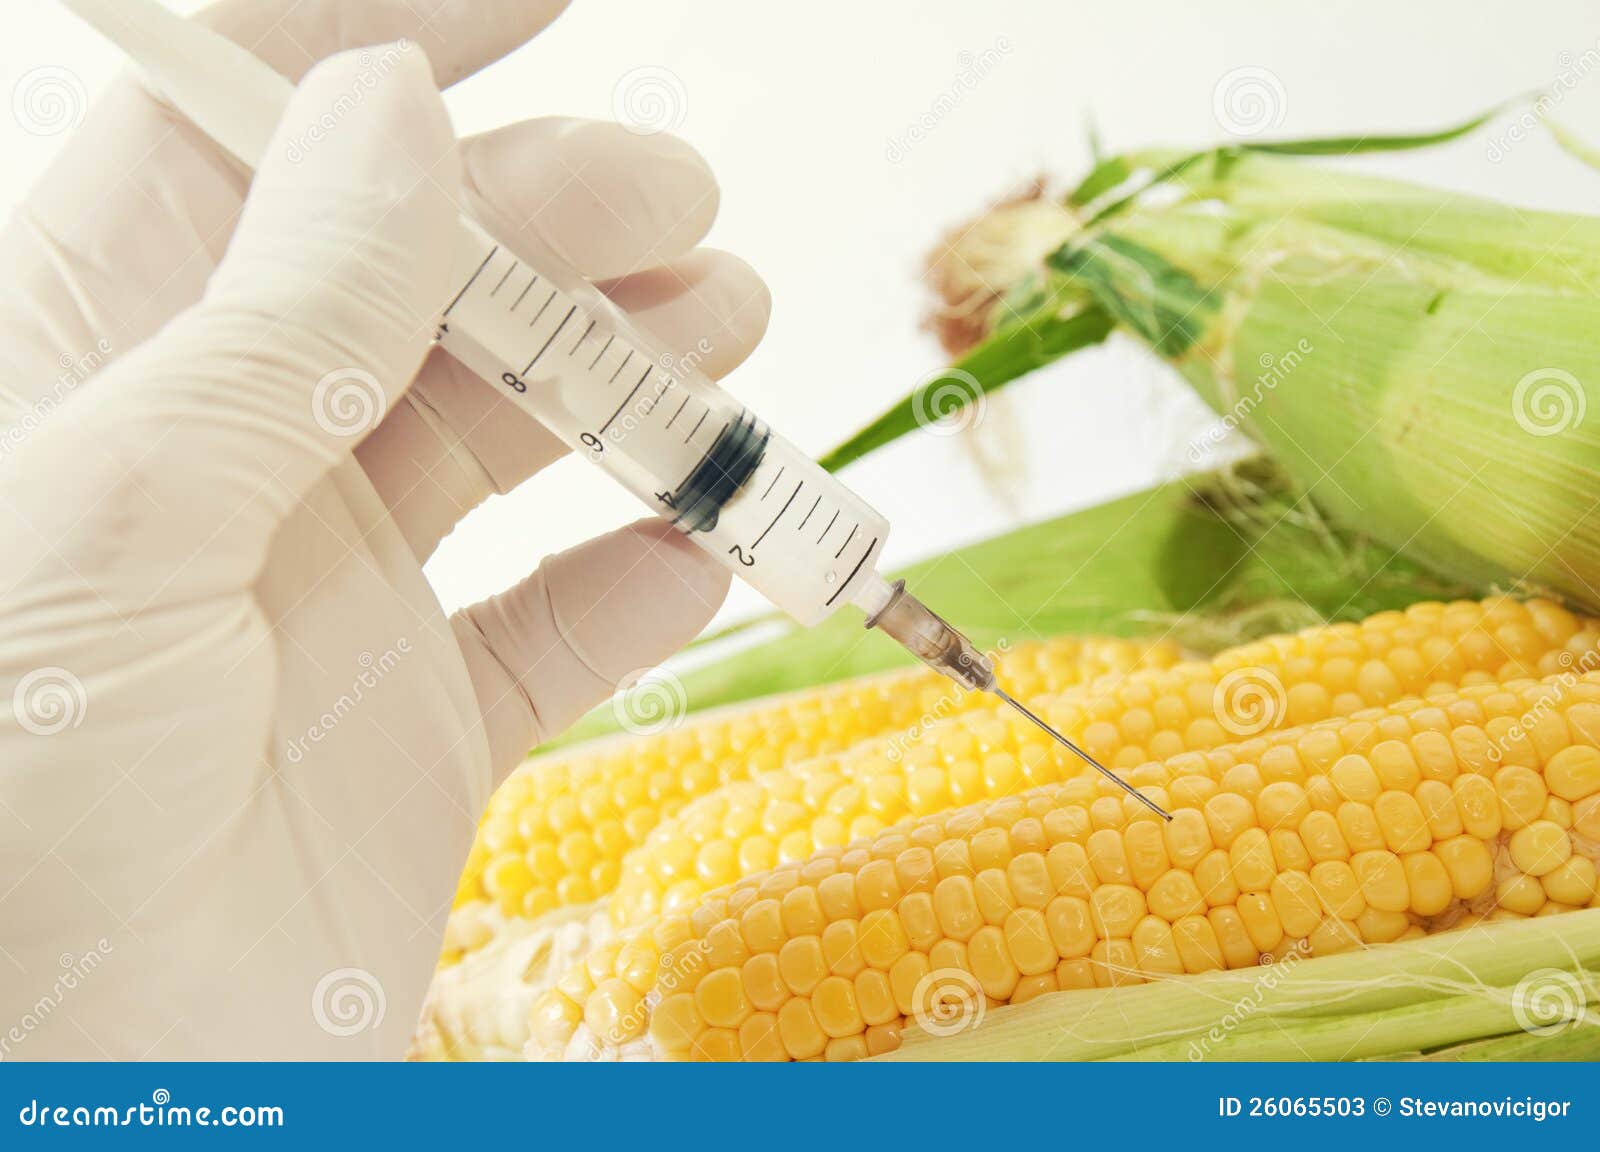 sweet corn, genetic engineering